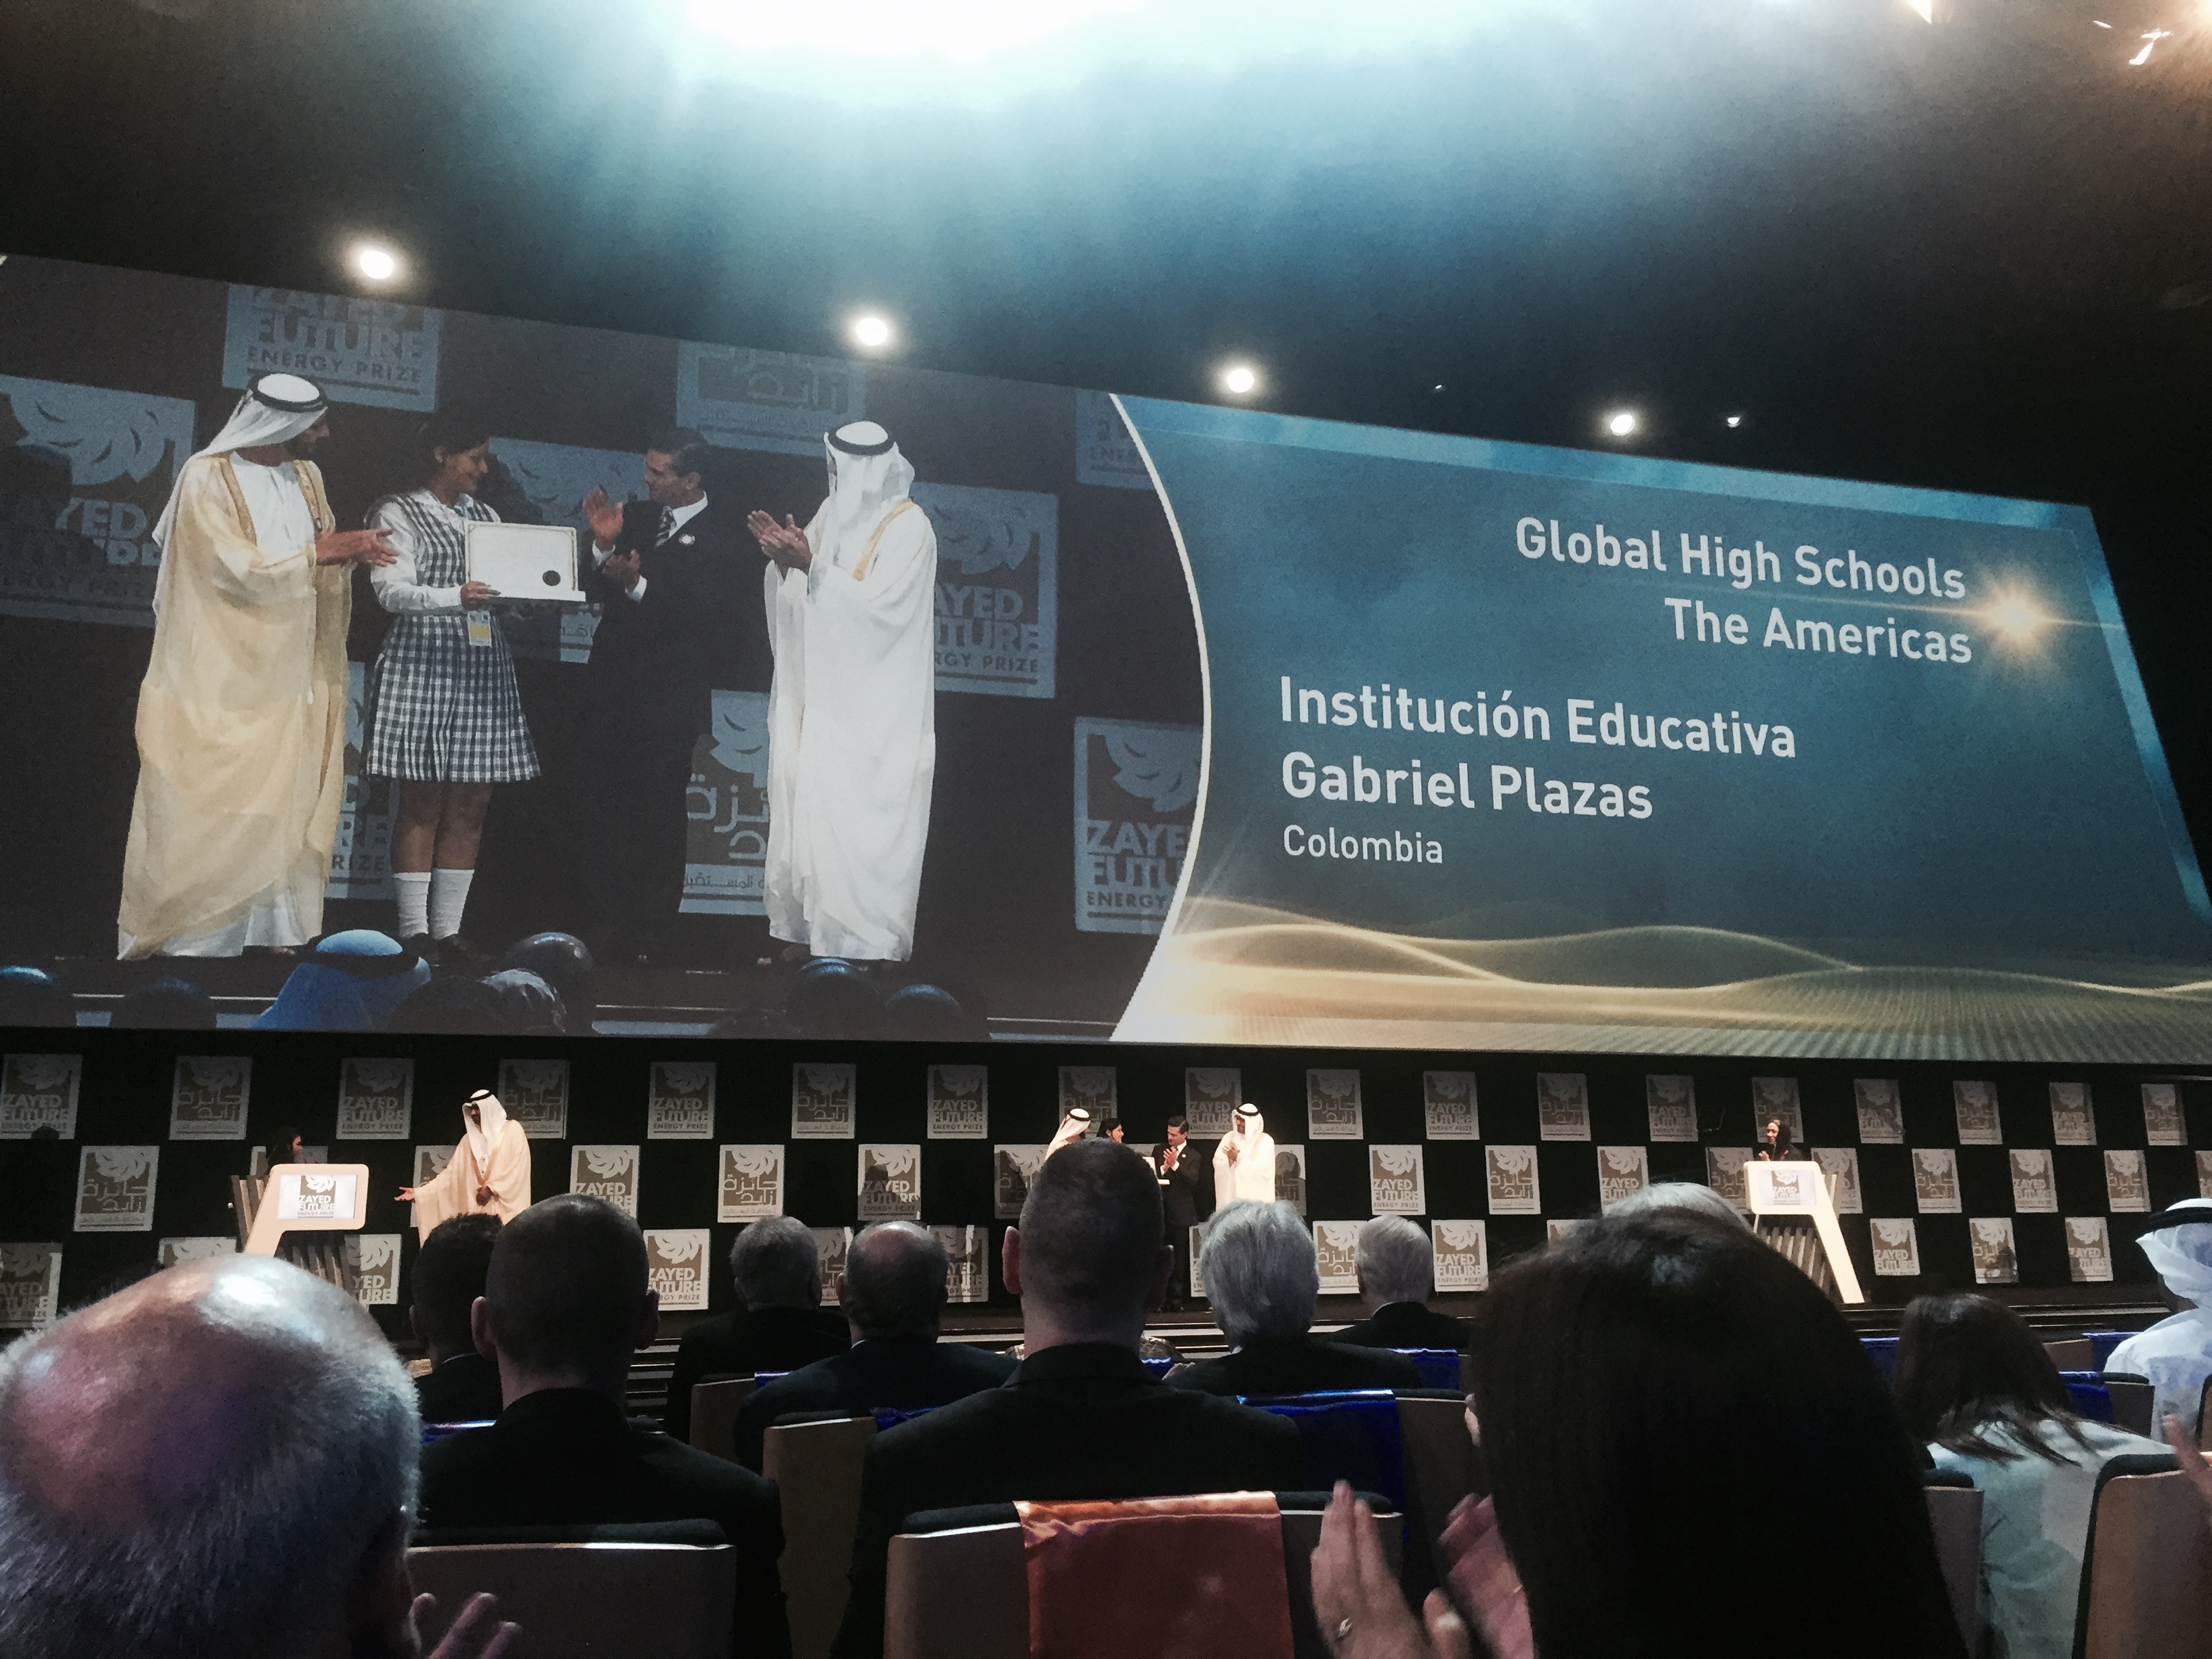 Embajada en Emiratos Árabes Unidos acompañó a Institución Educativa Gabriel Plazas de Colombia a recibir el Premio "Zayed de la Energía del Futuro"